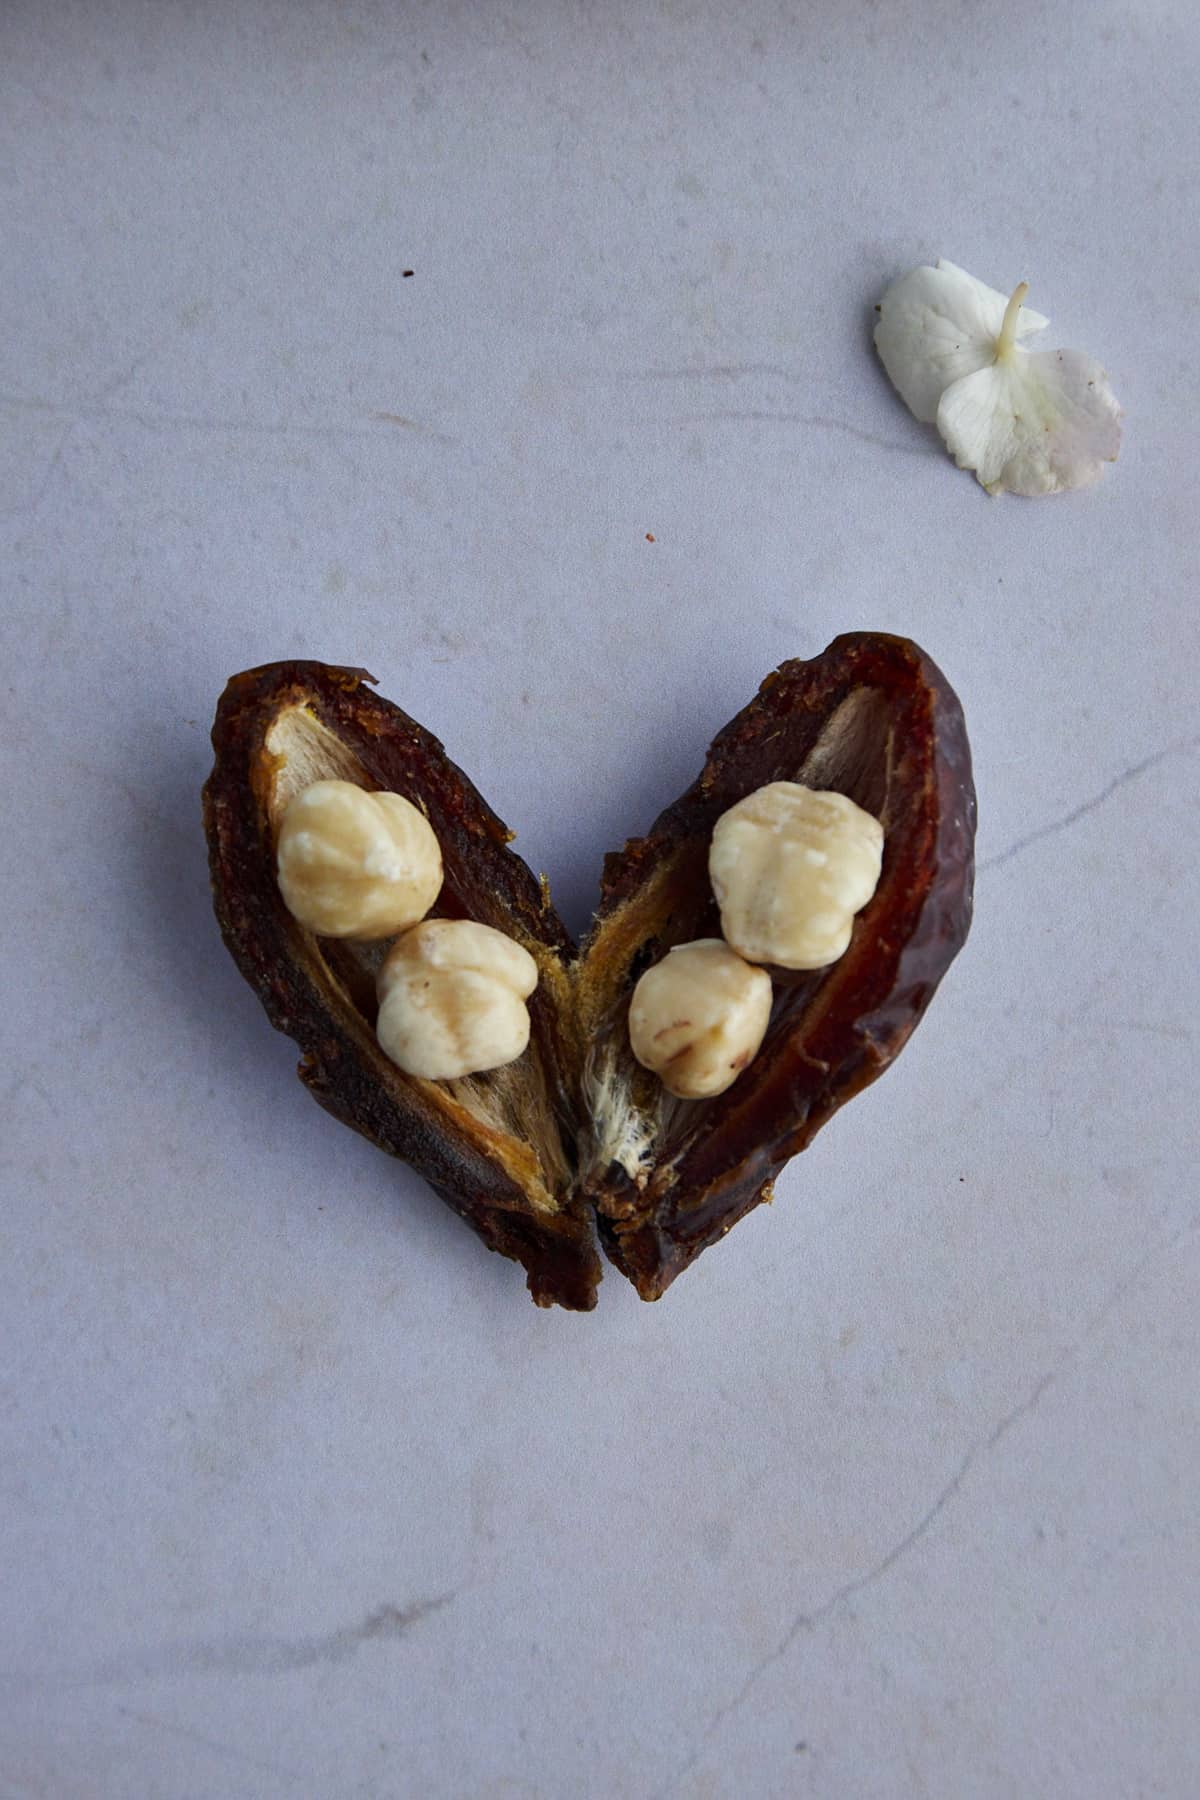 a pitted Medjool date stuffed with hazelnuts